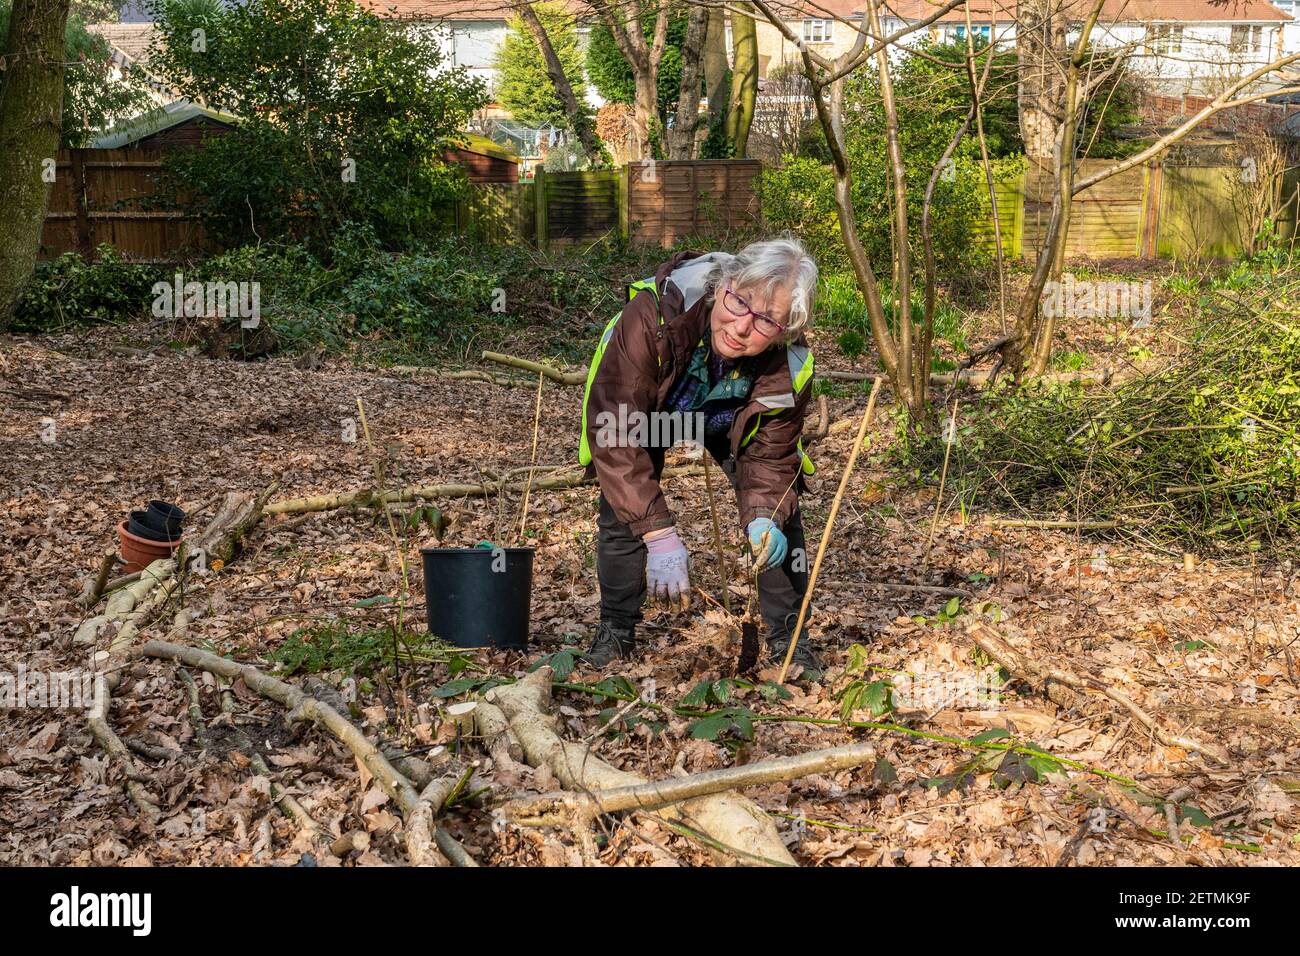 Mujeres voluntarias de conservación plantando árboles en un área de bosque cerca de casas, Surrey, Inglaterra, Reino Unido Foto de stock